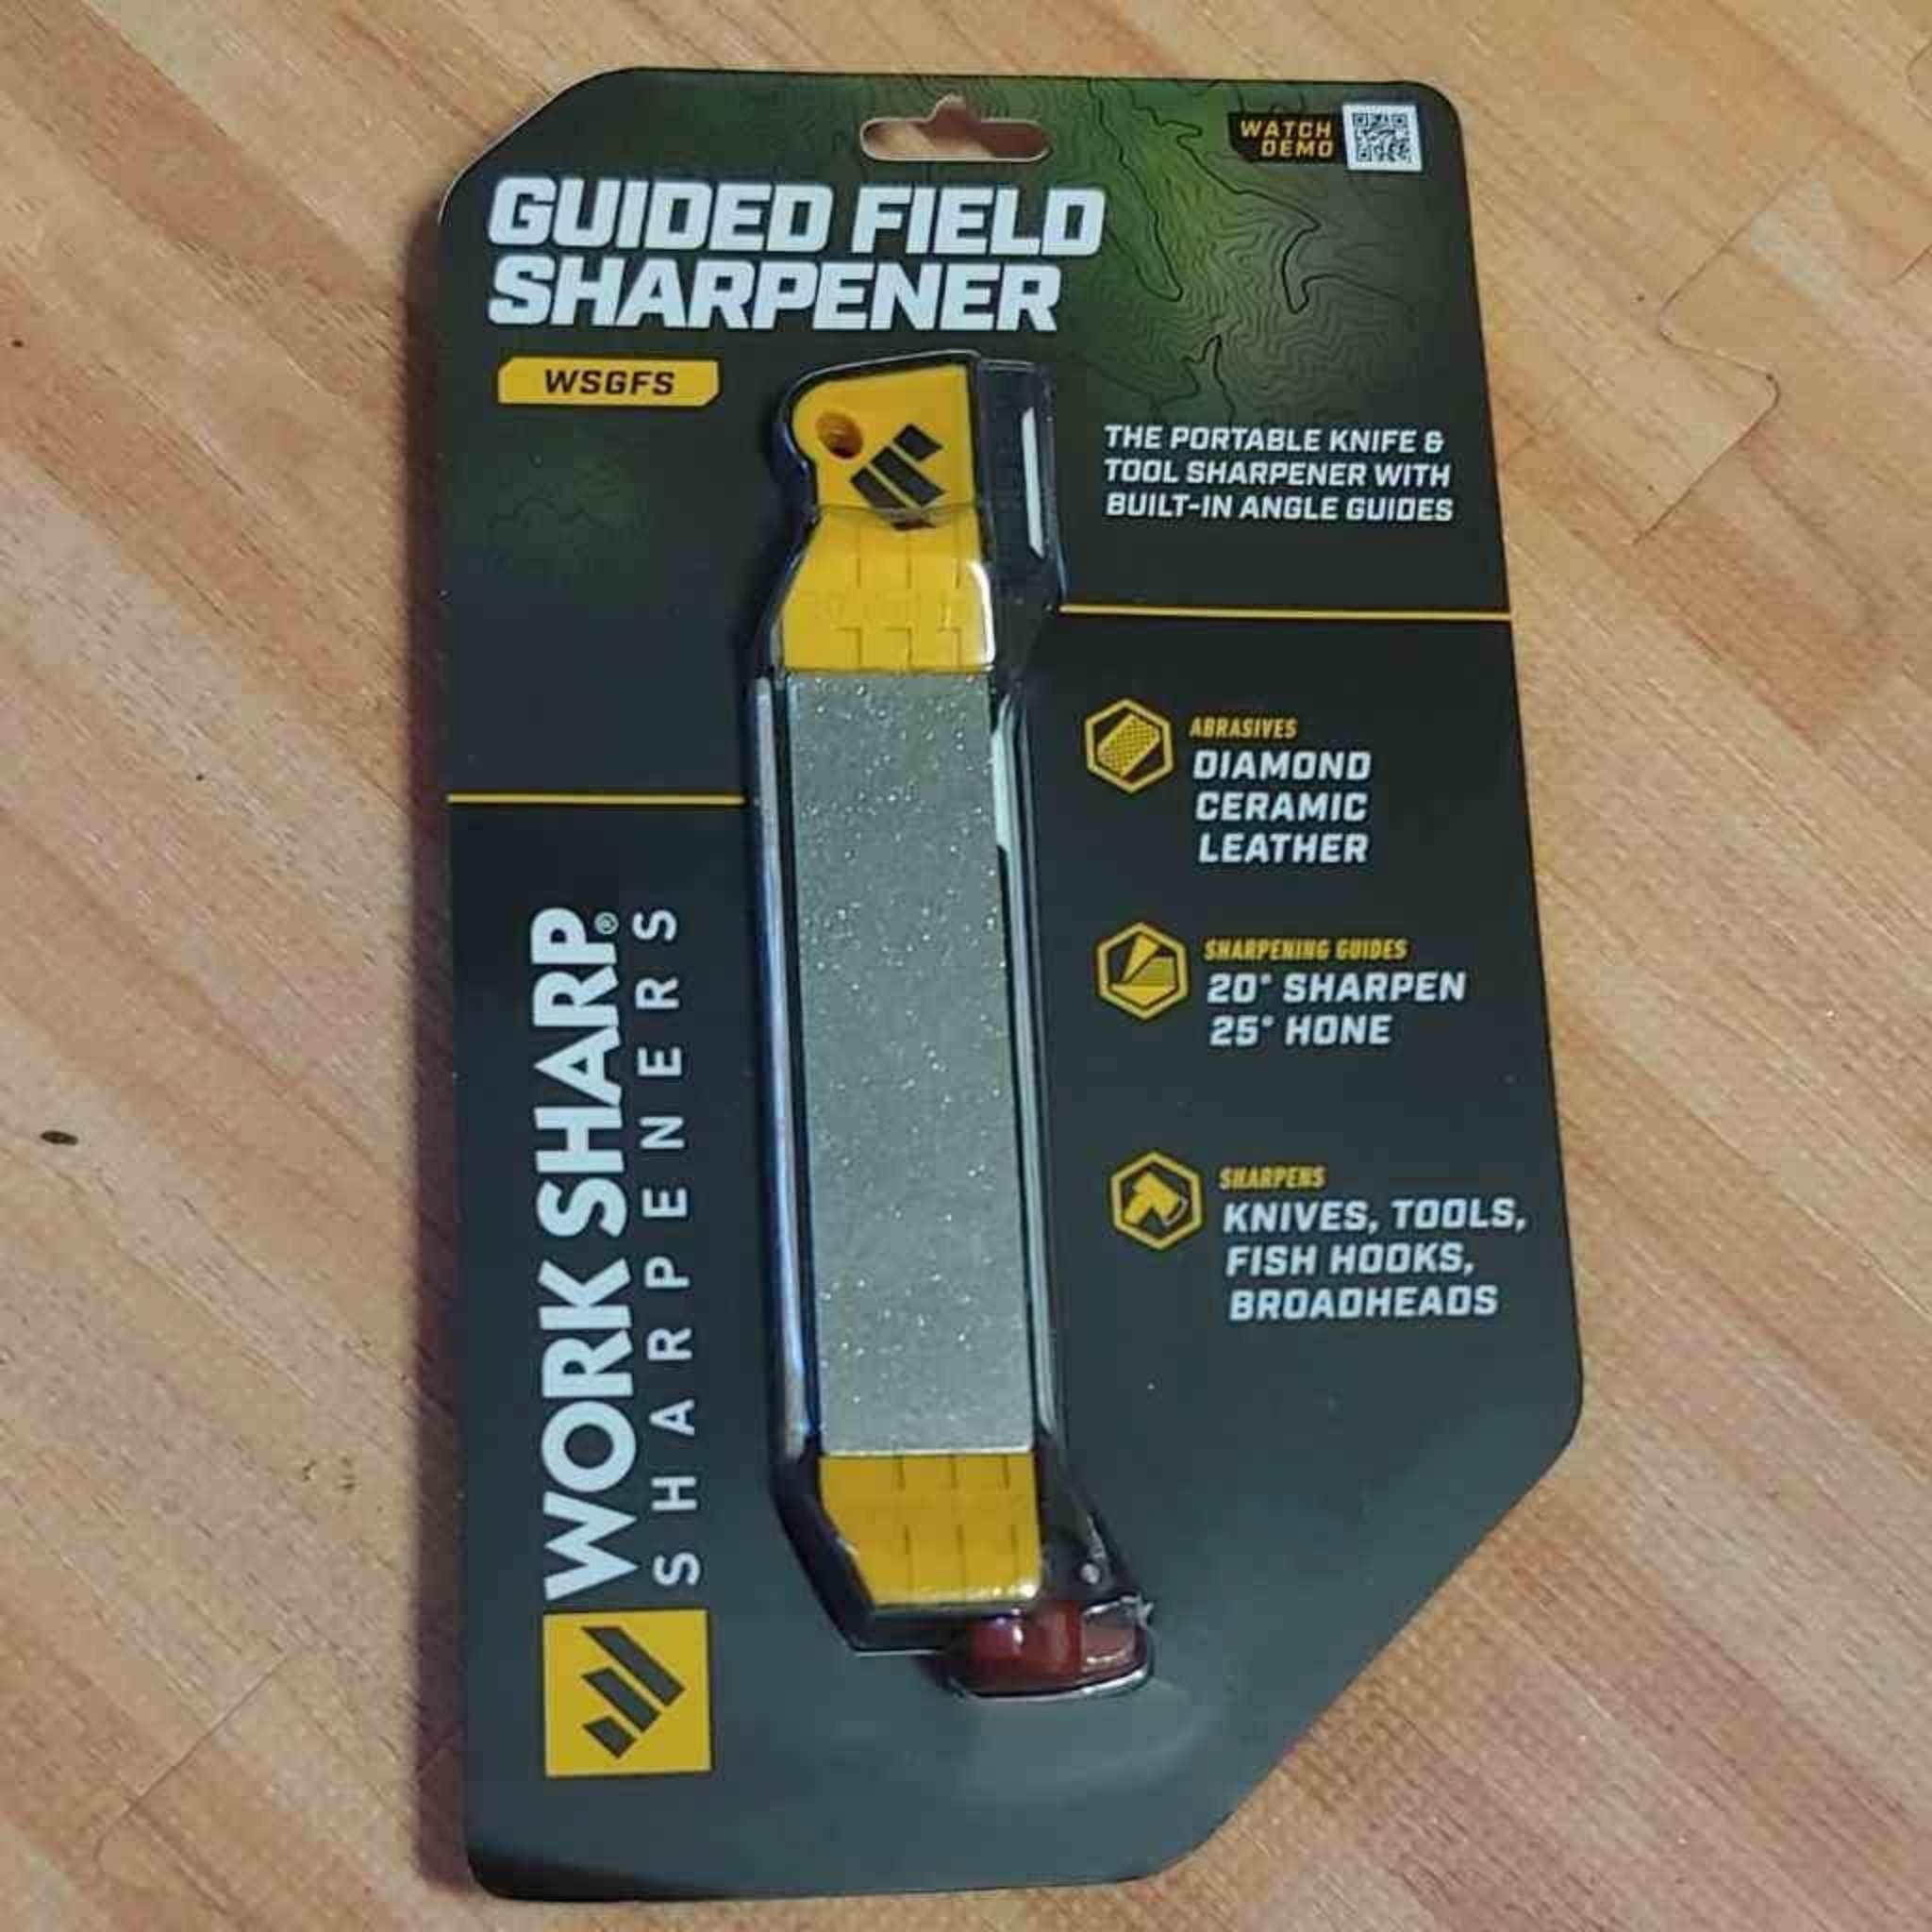 Work Sharp Guided Field Sharpener